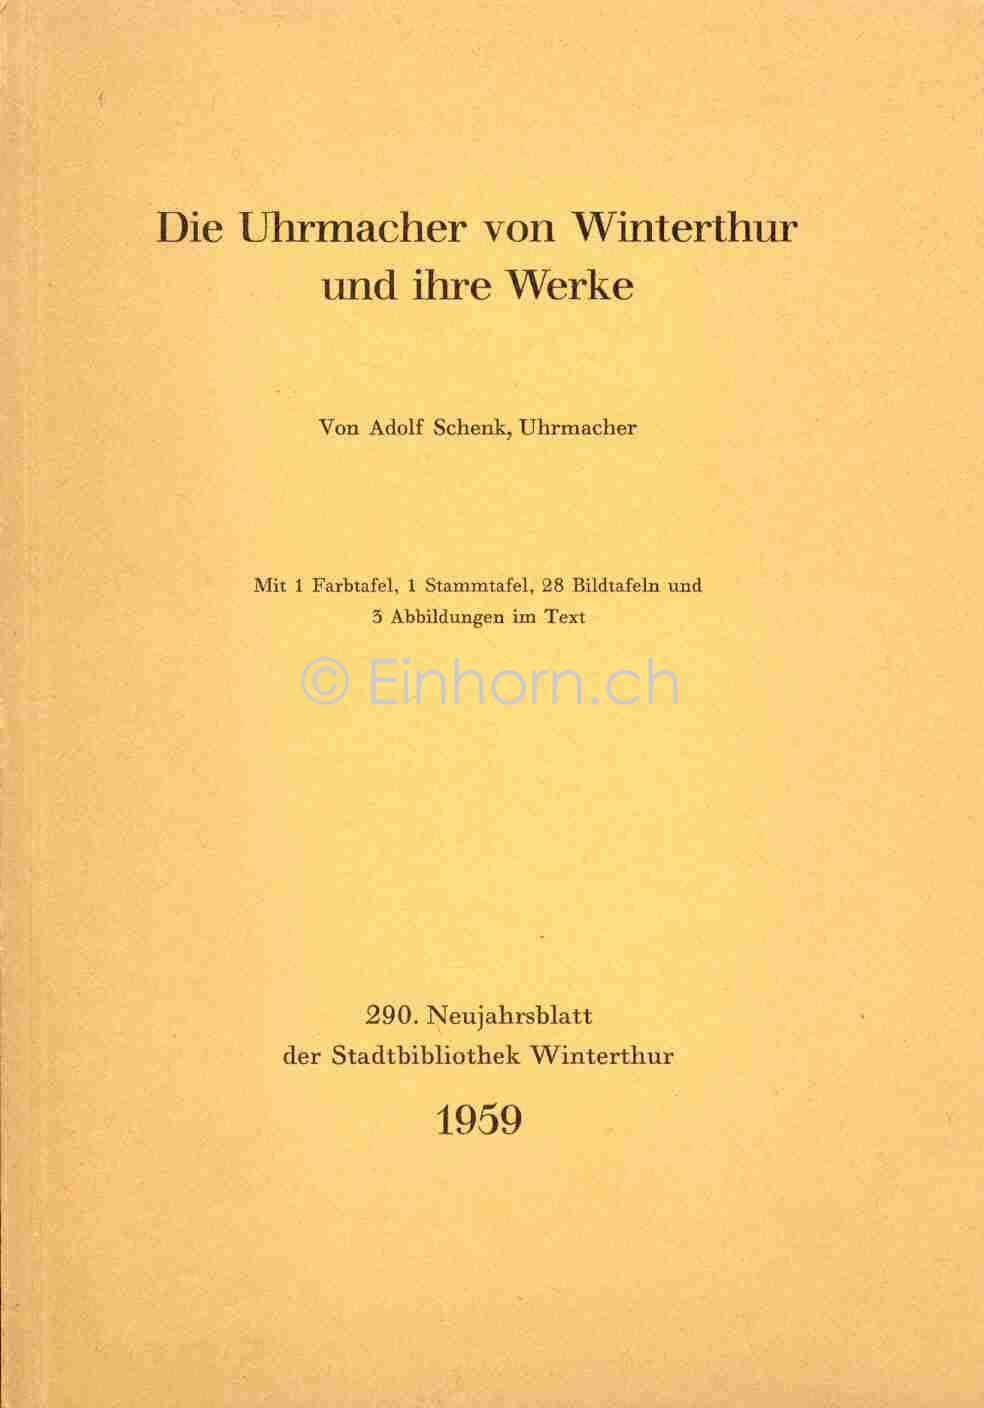 Adolf Schenk, Uhrmacher von Winterthur,  Uhrmacher Liechti,